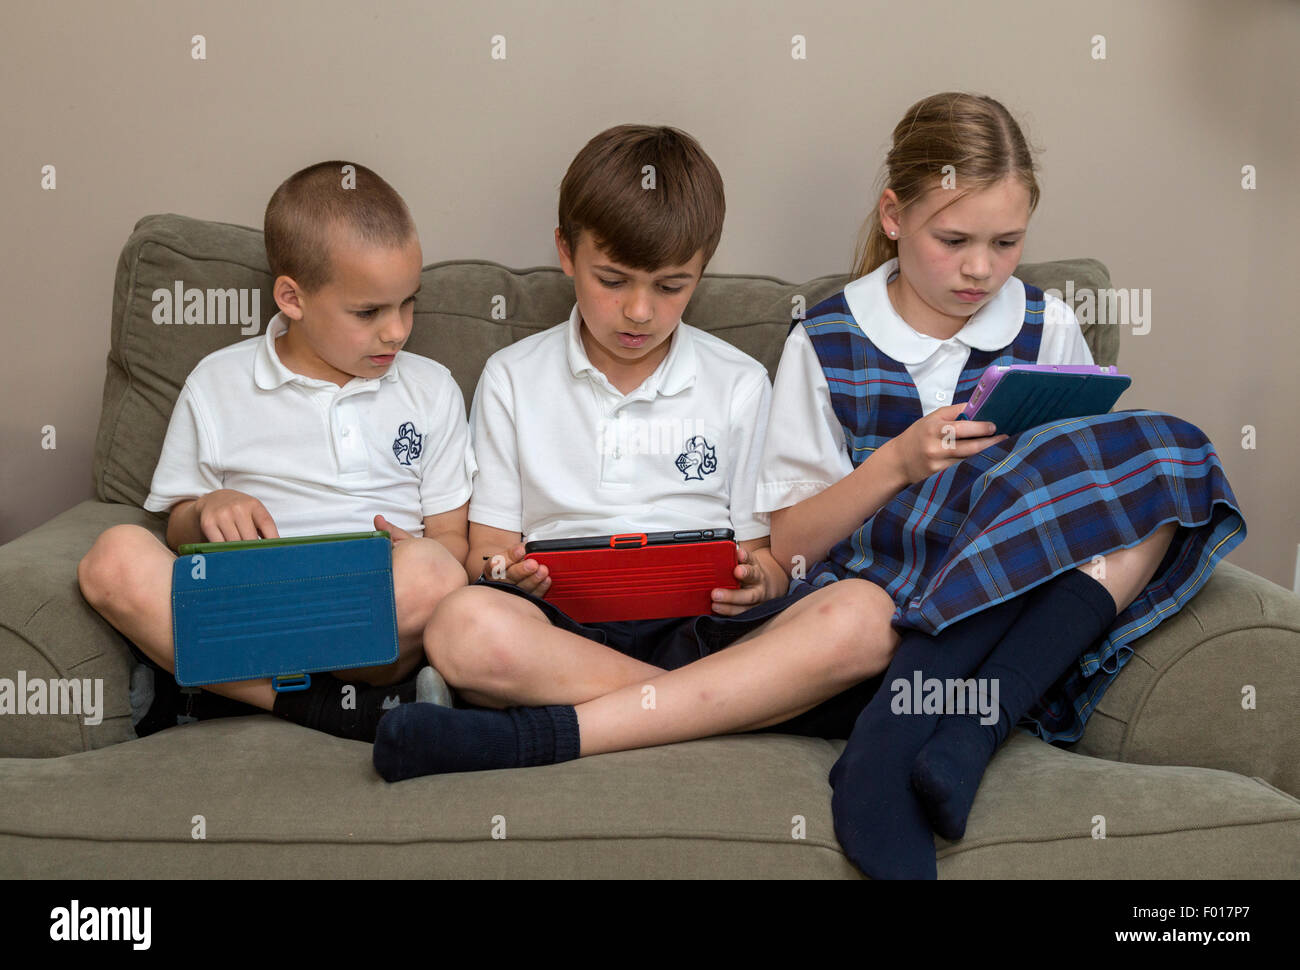 Famiglia moderna a casa dopo la scuola: i bambini con i loro ipad. Il sig. Nota sequenza con  PER5313, 5315, e 5316. Foto Stock